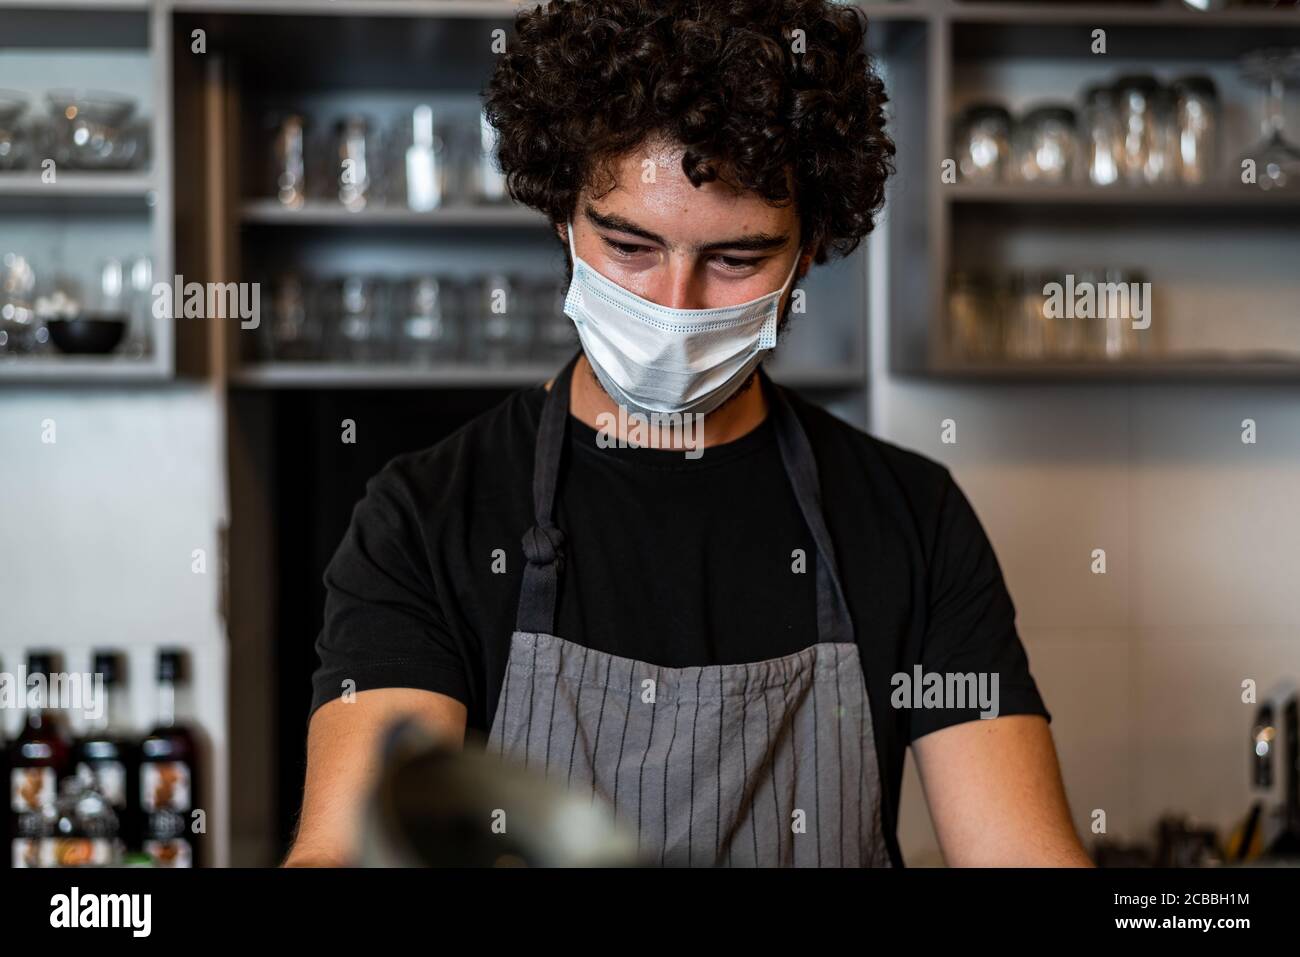 Jeune homme, barista, qui prépare un café expresso tout en portant un masque chirurgical et des gants pour prévenir la propagation du virus corona - concept de travail de sécurité du Bar. Banque D'Images